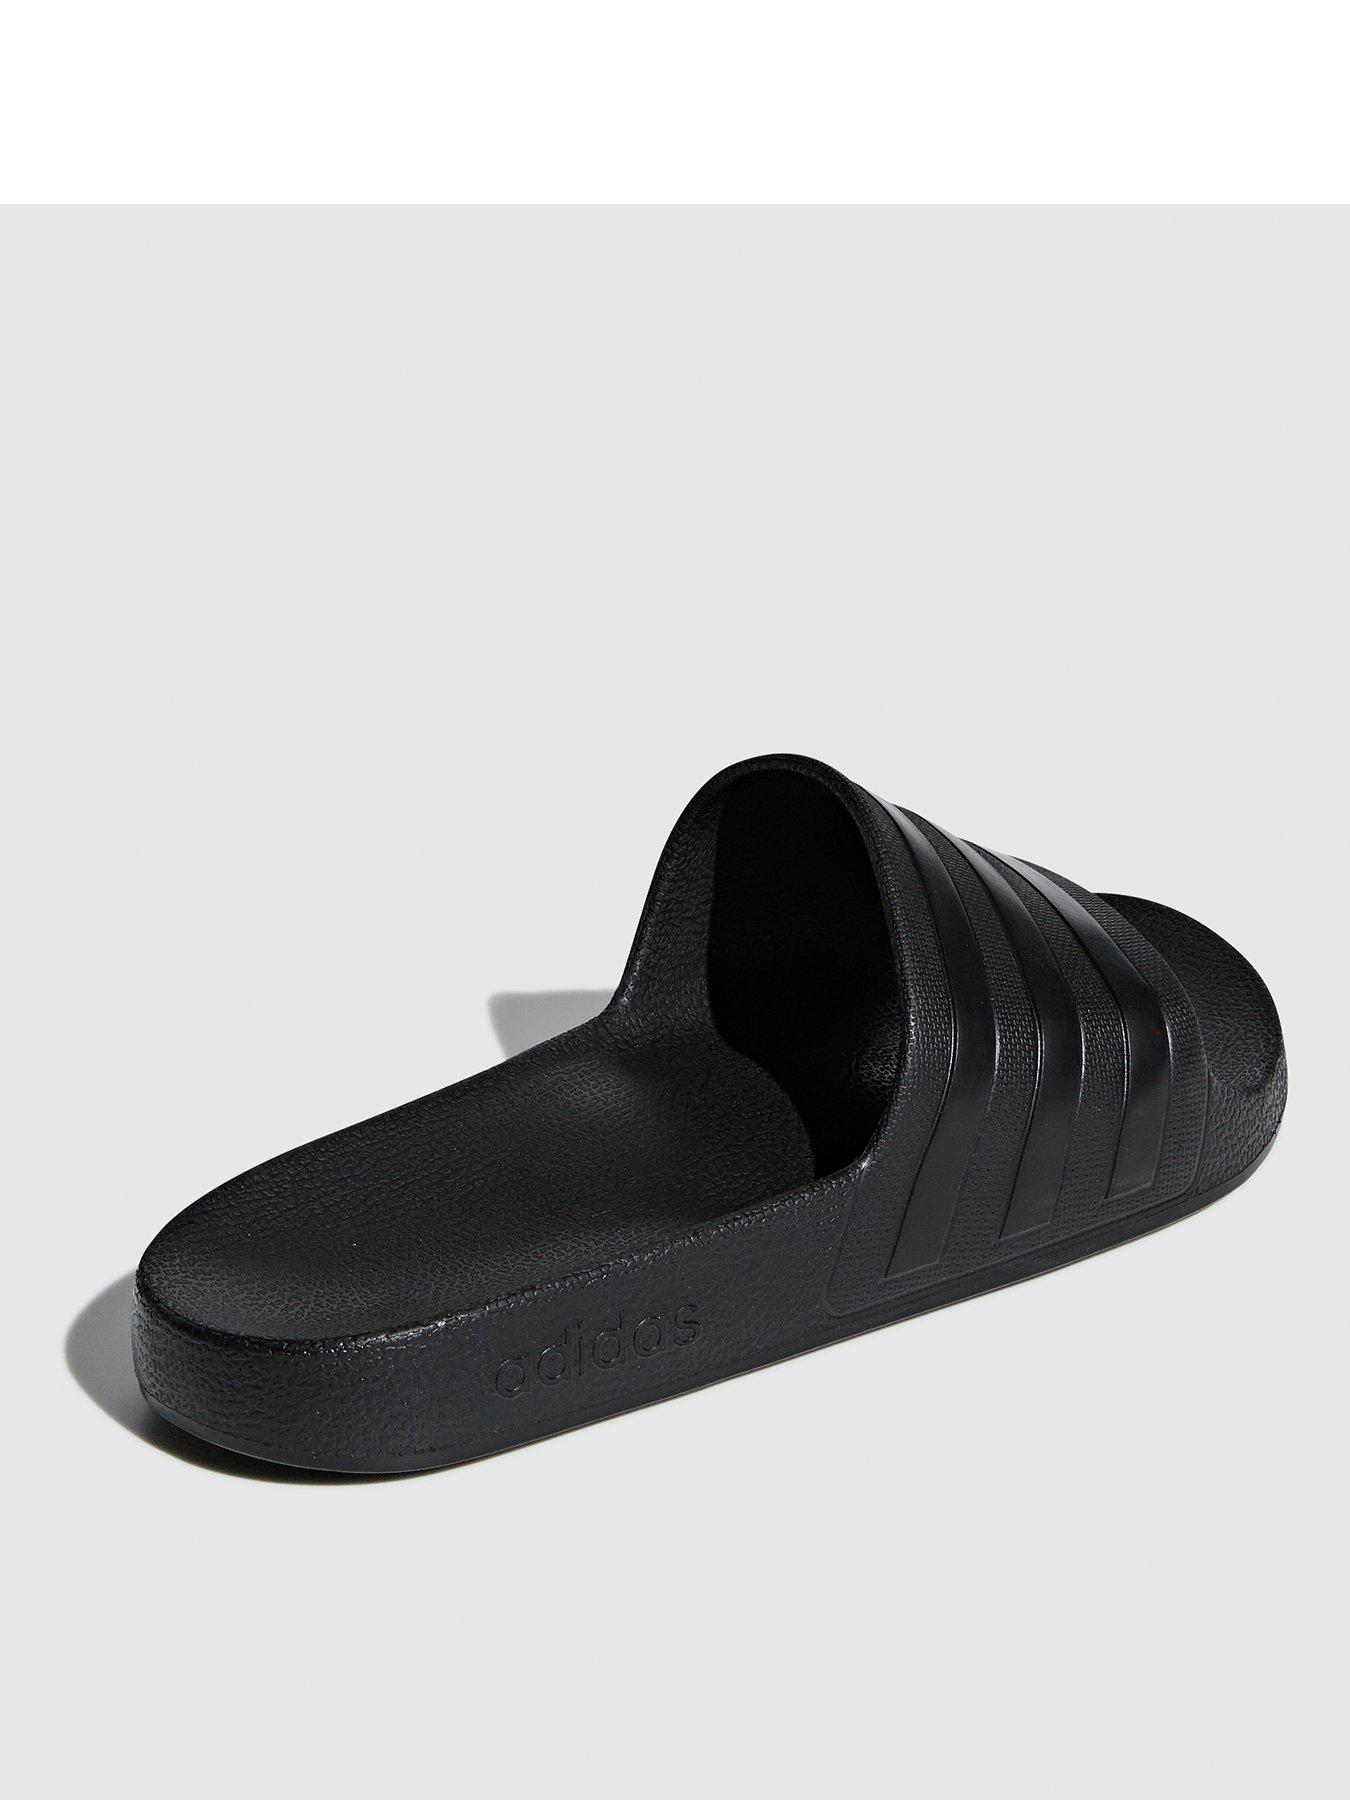 adidas adilette aqua slides black